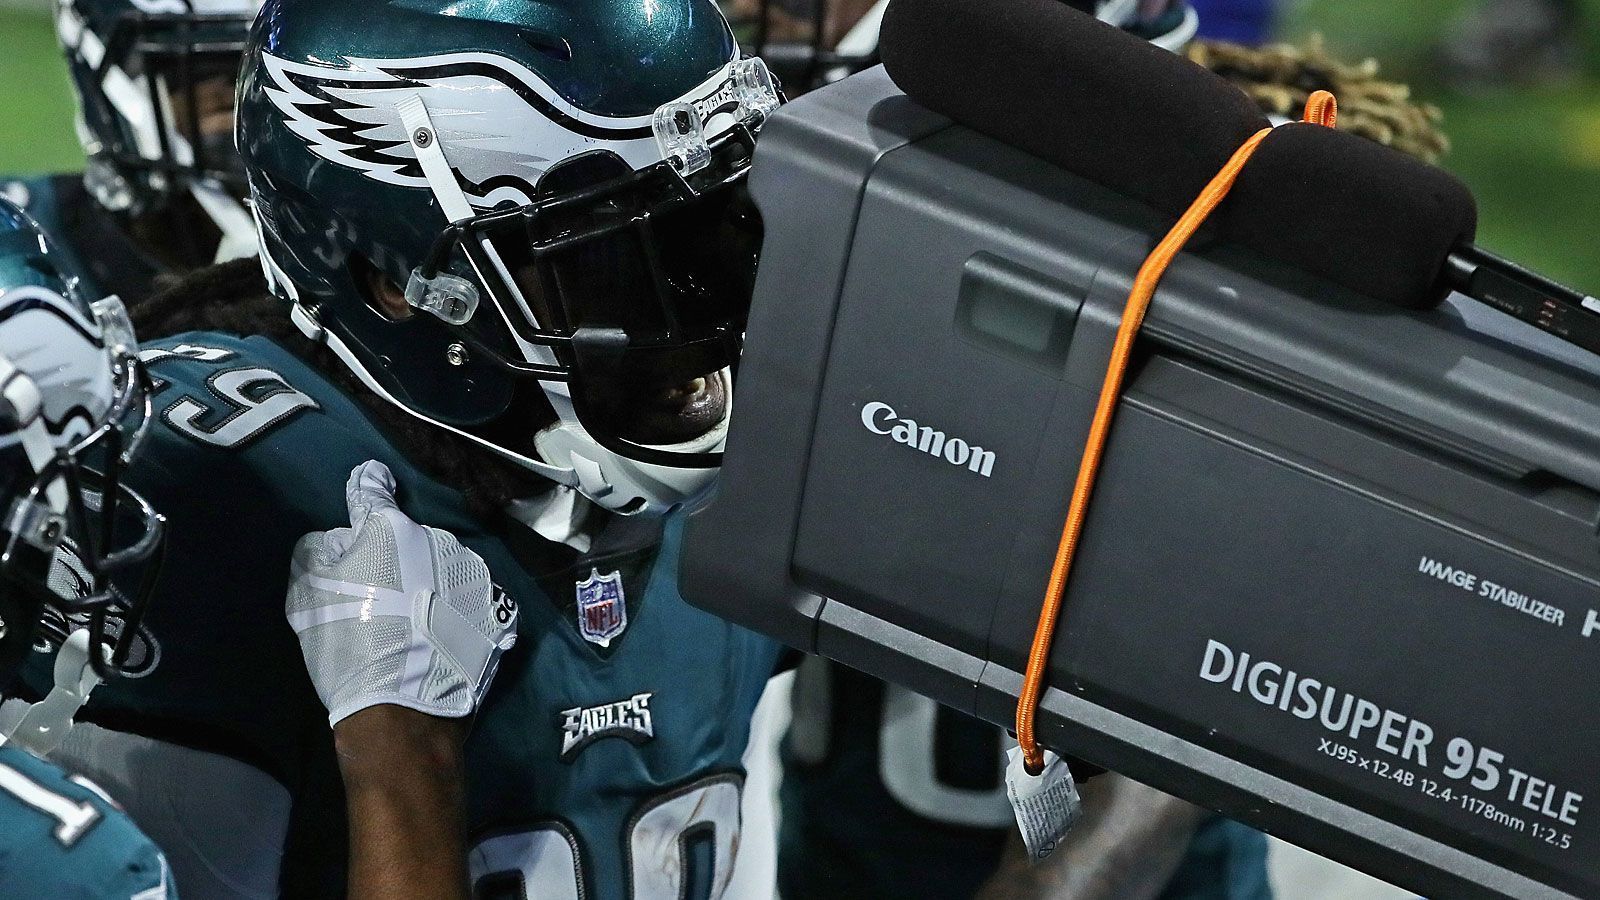 
                <strong>Kameras im Überfluß</strong><br>
                Die TV-Übertragung des Super Bowls setzt Maßstäbe für Sportereignisse. Der US-Sender CBS wird 115 Kameras im Stadion einsetzen, darunter auch hochauflösende 8K-Kameras, die die Endzonen filmen und denen wirklich nichts entgehen dürfte.
              